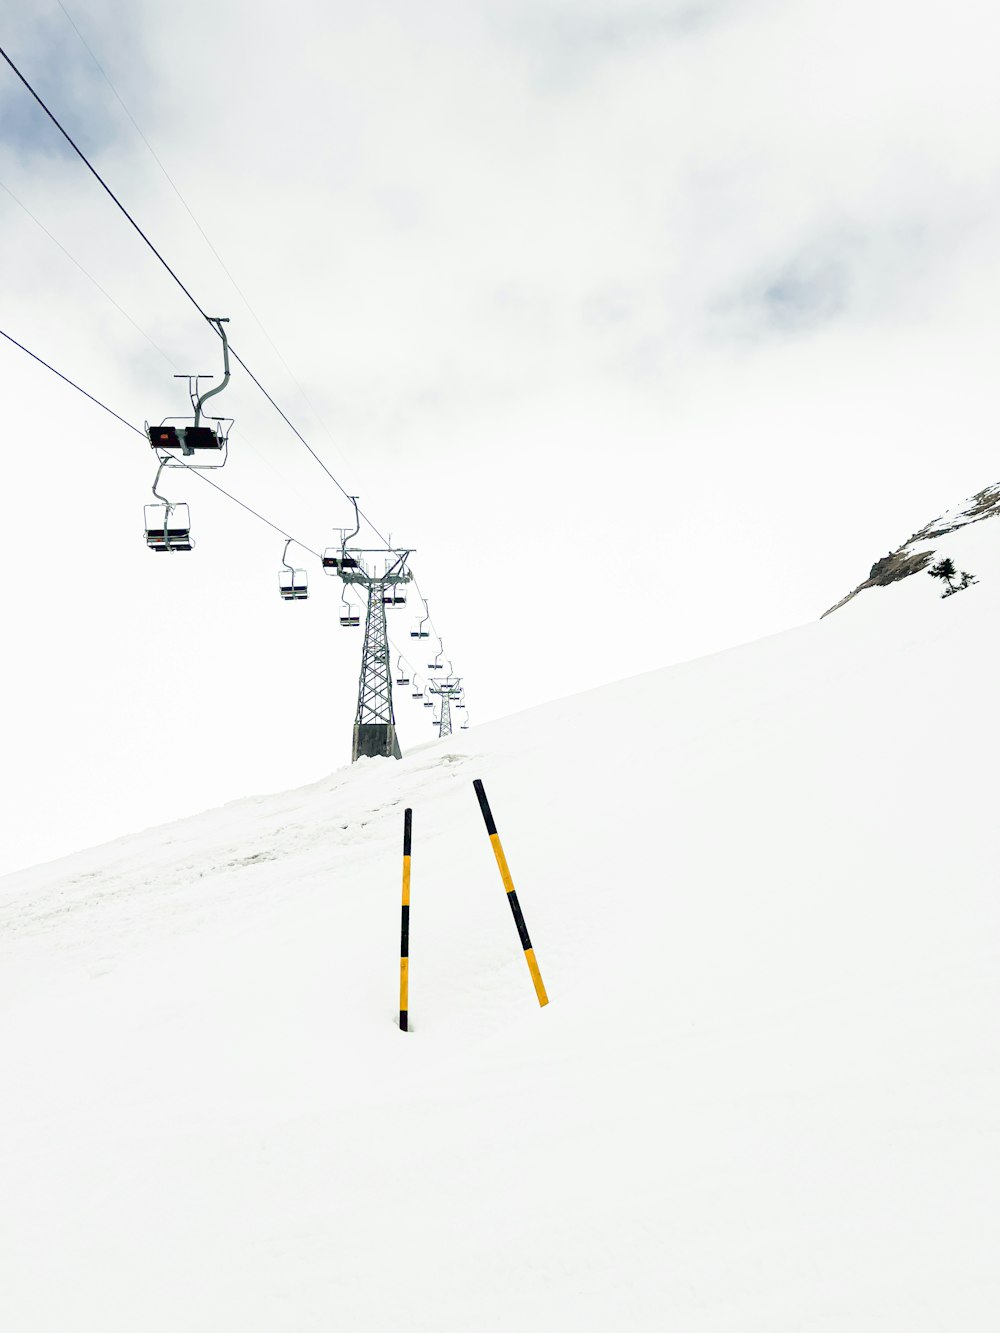 uno skilift che sale su una montagna innevata